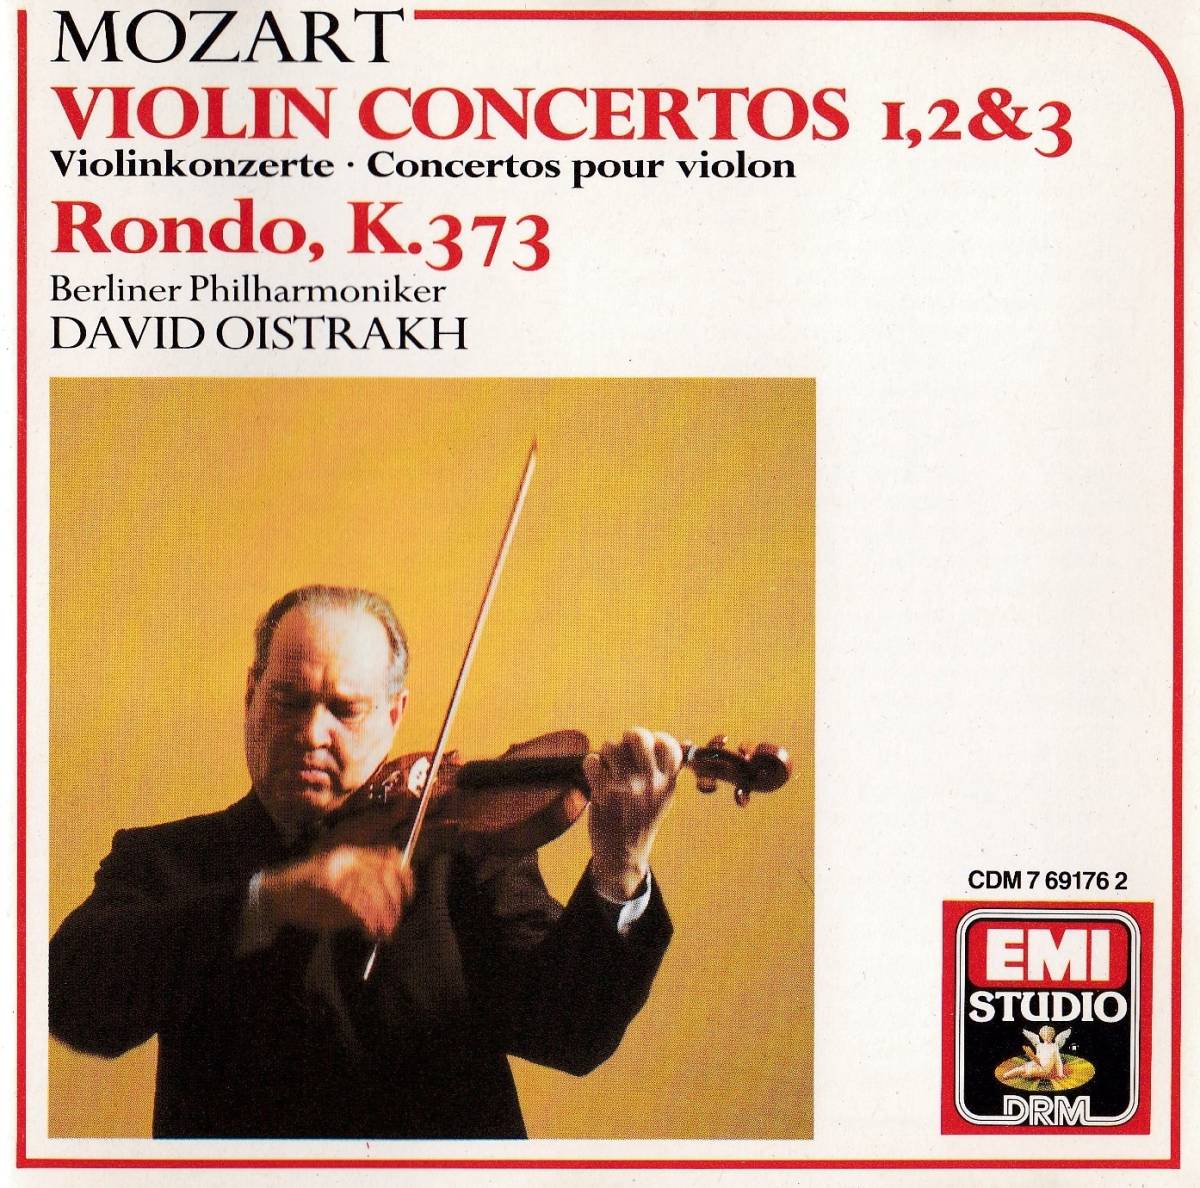 Музыка моцарта скрипка. Mozart Violin. Моцарт со скрипкой. Mozart - the Violin Concertos. Arabella Steinbacher / Mozart: Violin Concertos nos. 1 & 2.